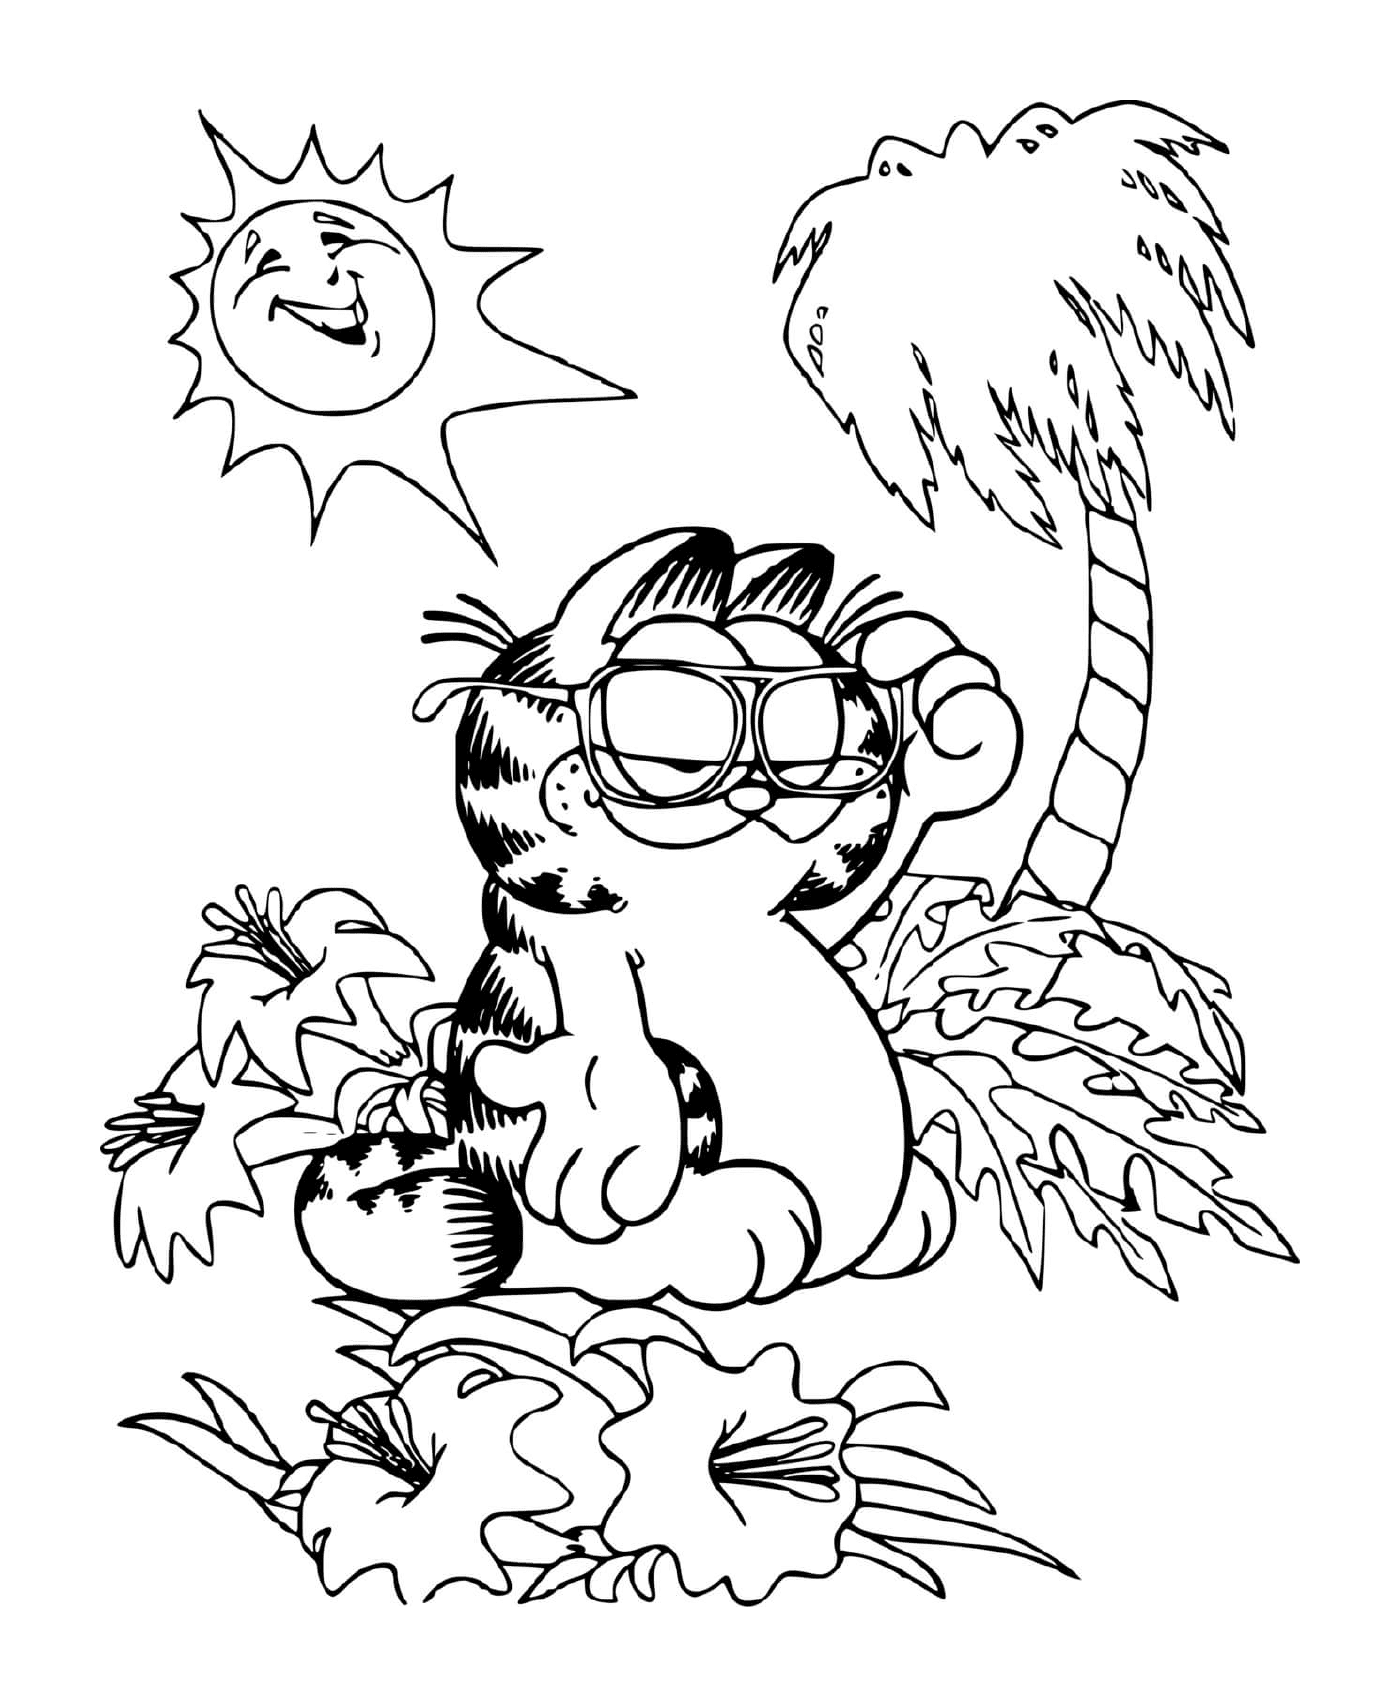  Garfield descansa sob uma palmeira 